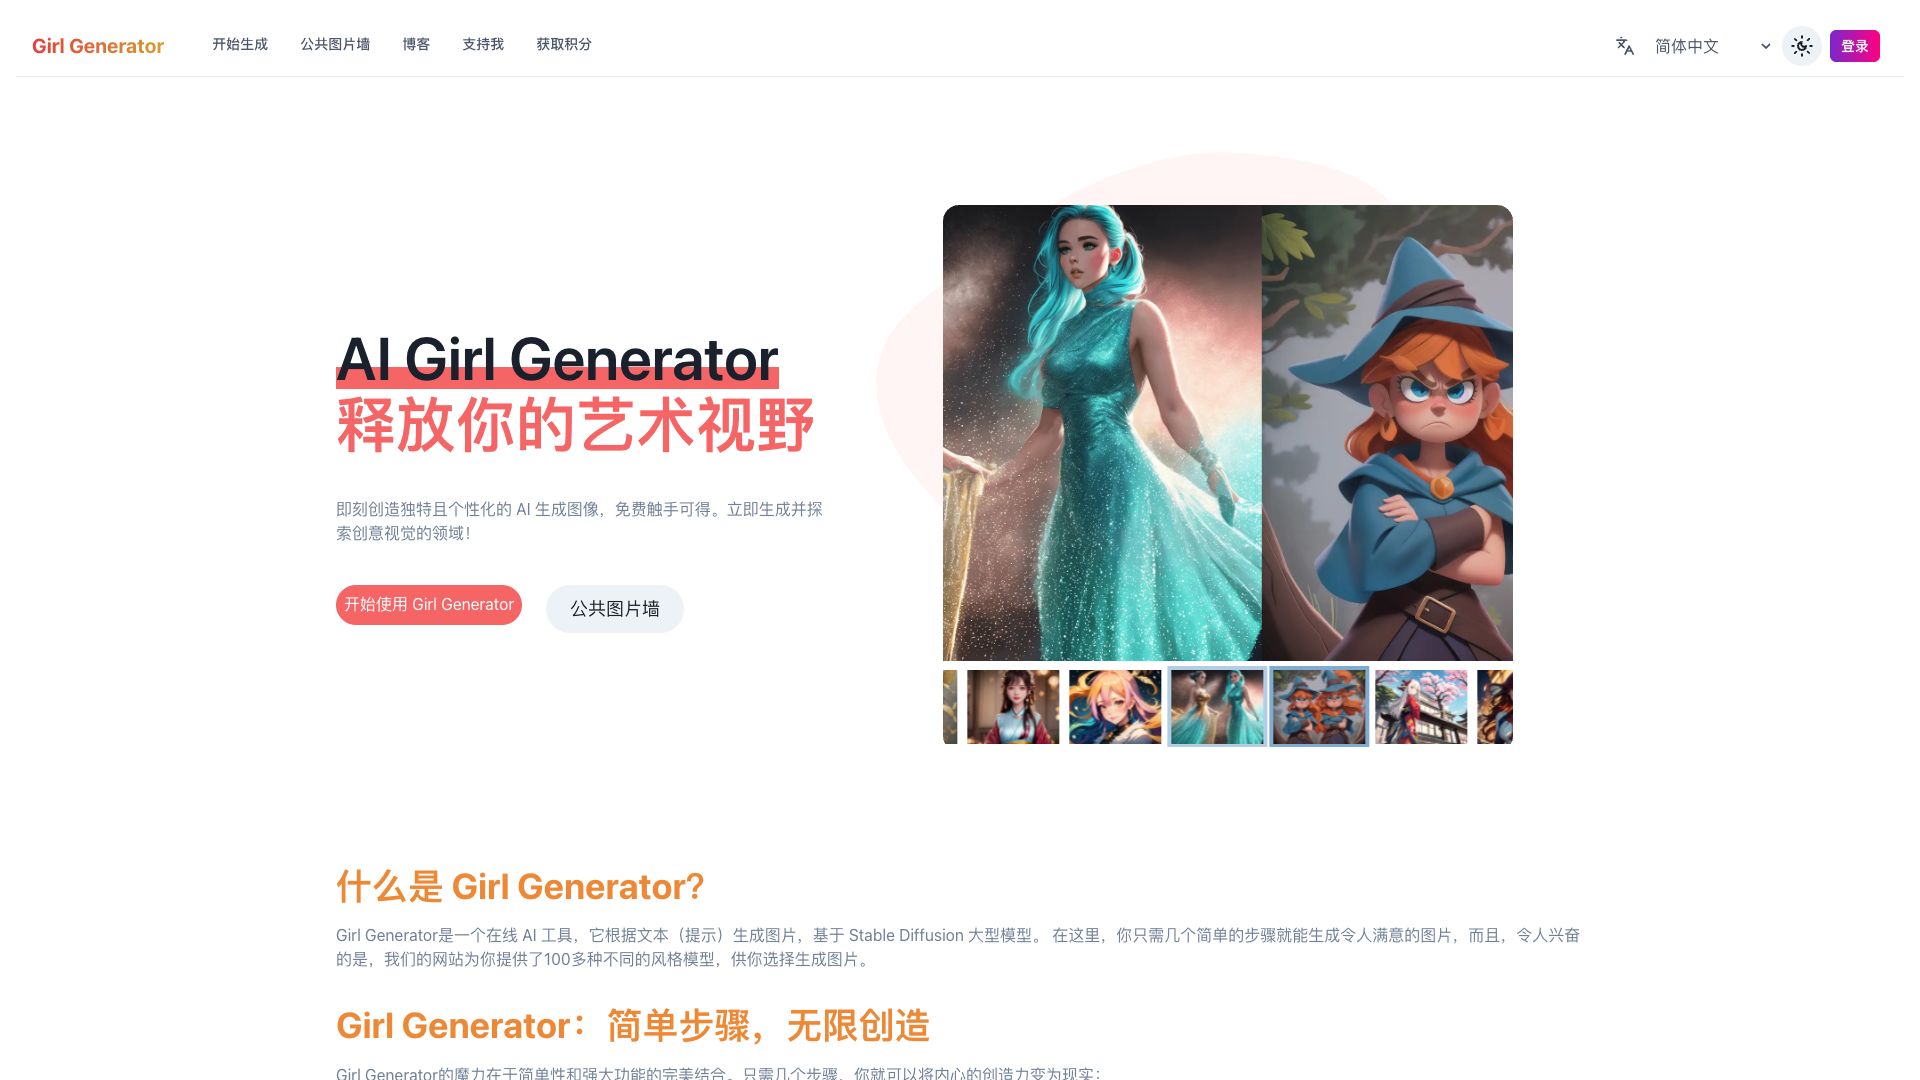 Girl Generator